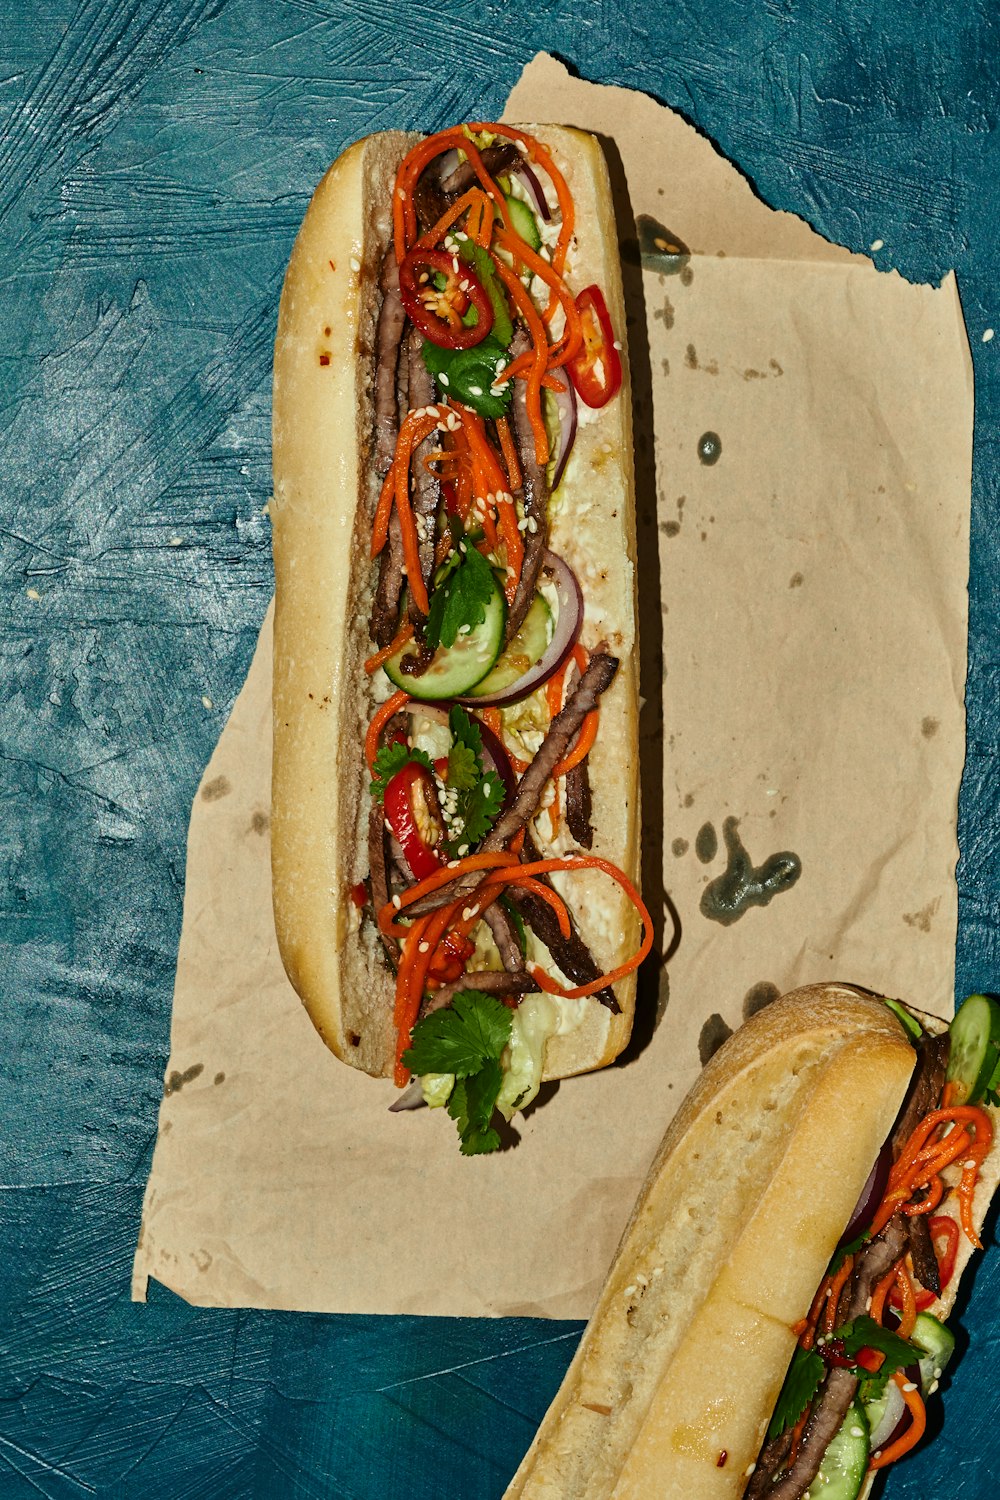 Zwei Hotdogs mit unterschiedlichen Belägen sitzen auf einem Stück Wachspapier